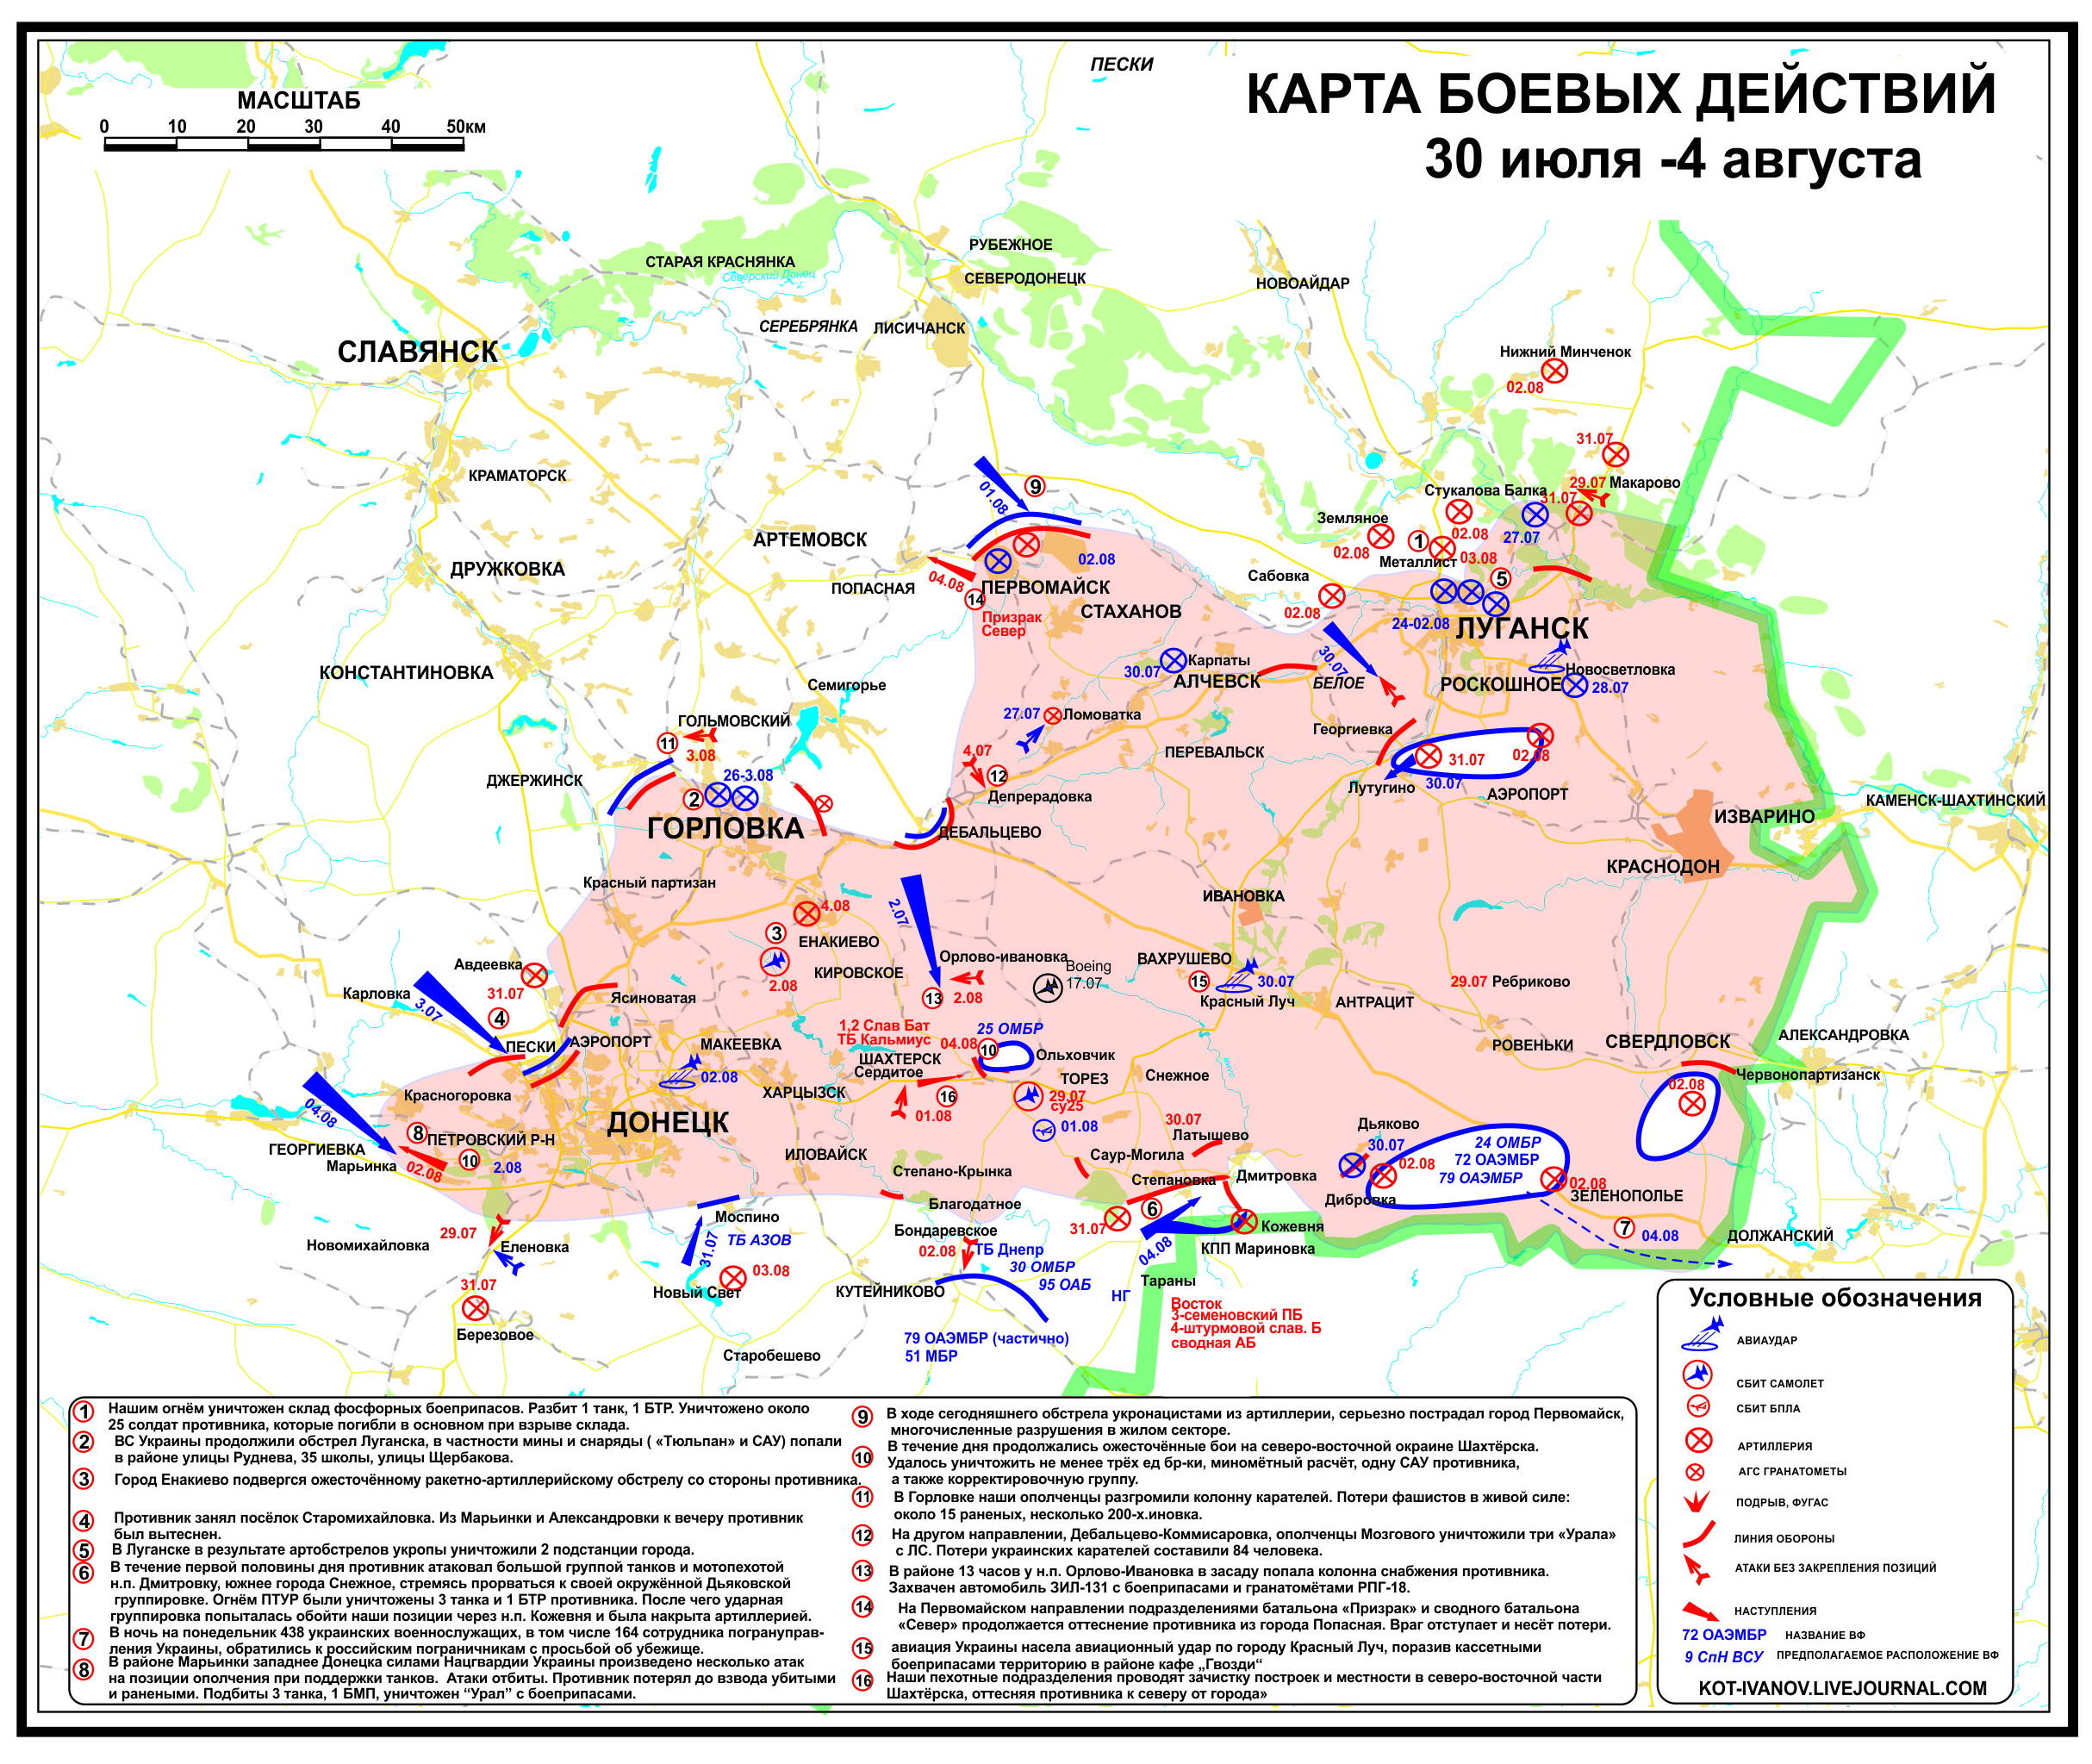 Situation_in_der_Ostukraine_zum_vierten_August_aus_Separatistensicht.jpg